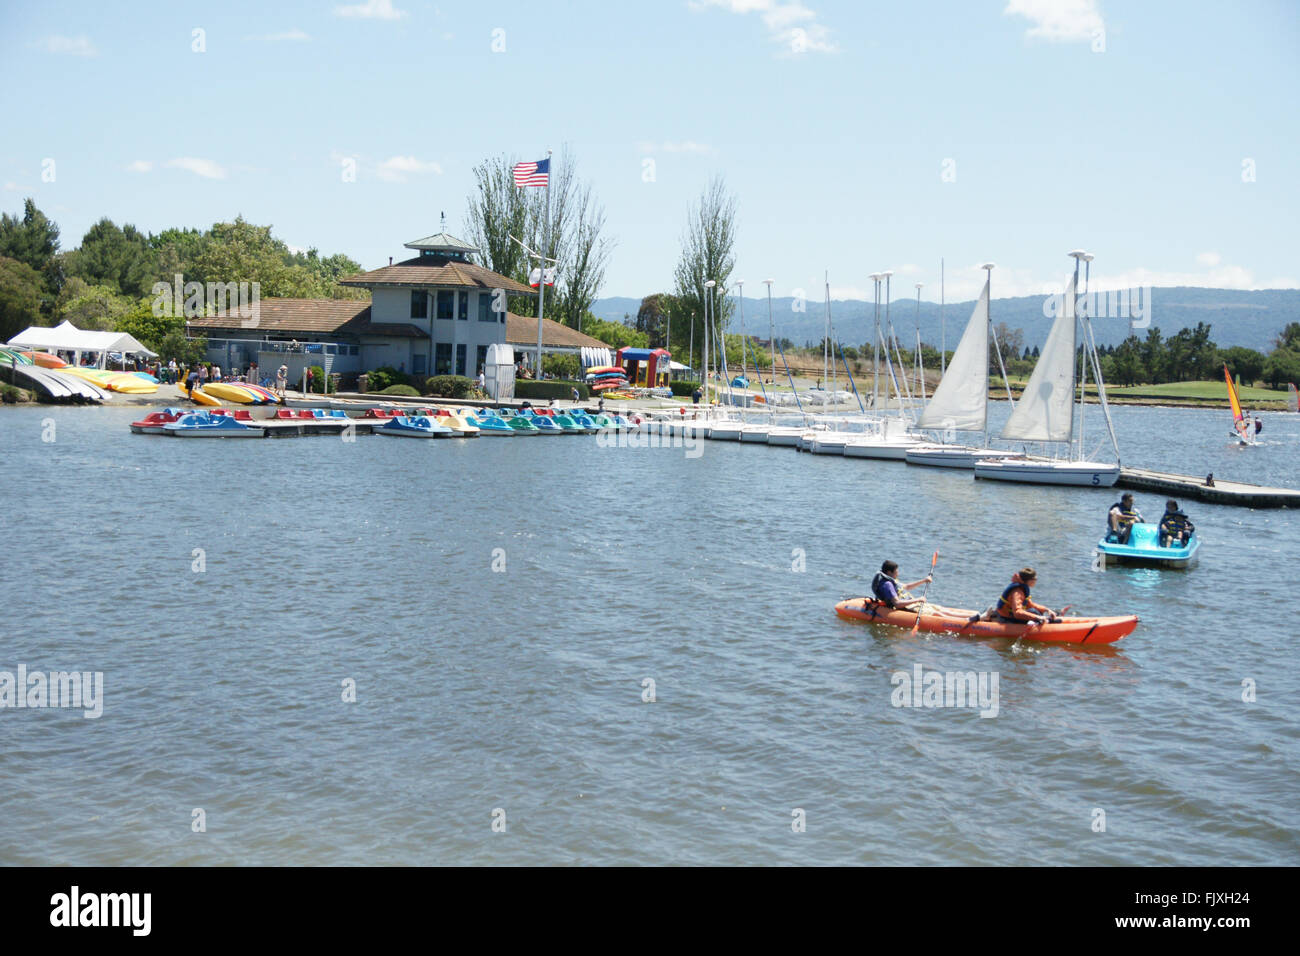 Shoreline Park Lake, Mountain View, Californie, USA, destination populaire pour les résidents et visiteurs, installations Banque D'Images